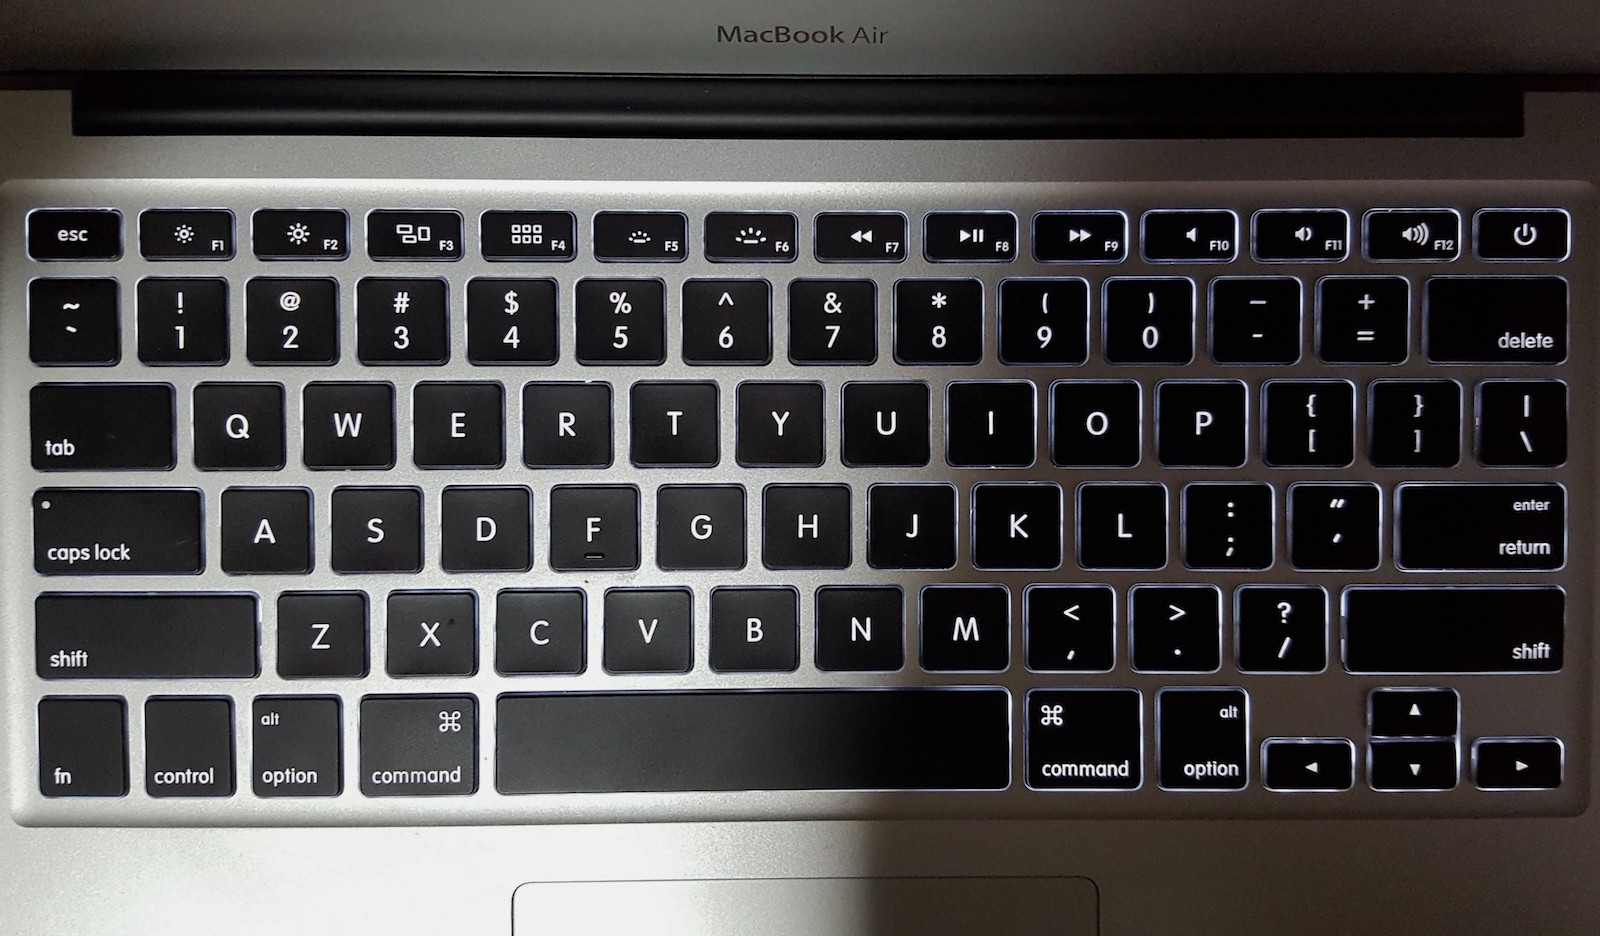 Figure 30: Macbook Air keyboard.